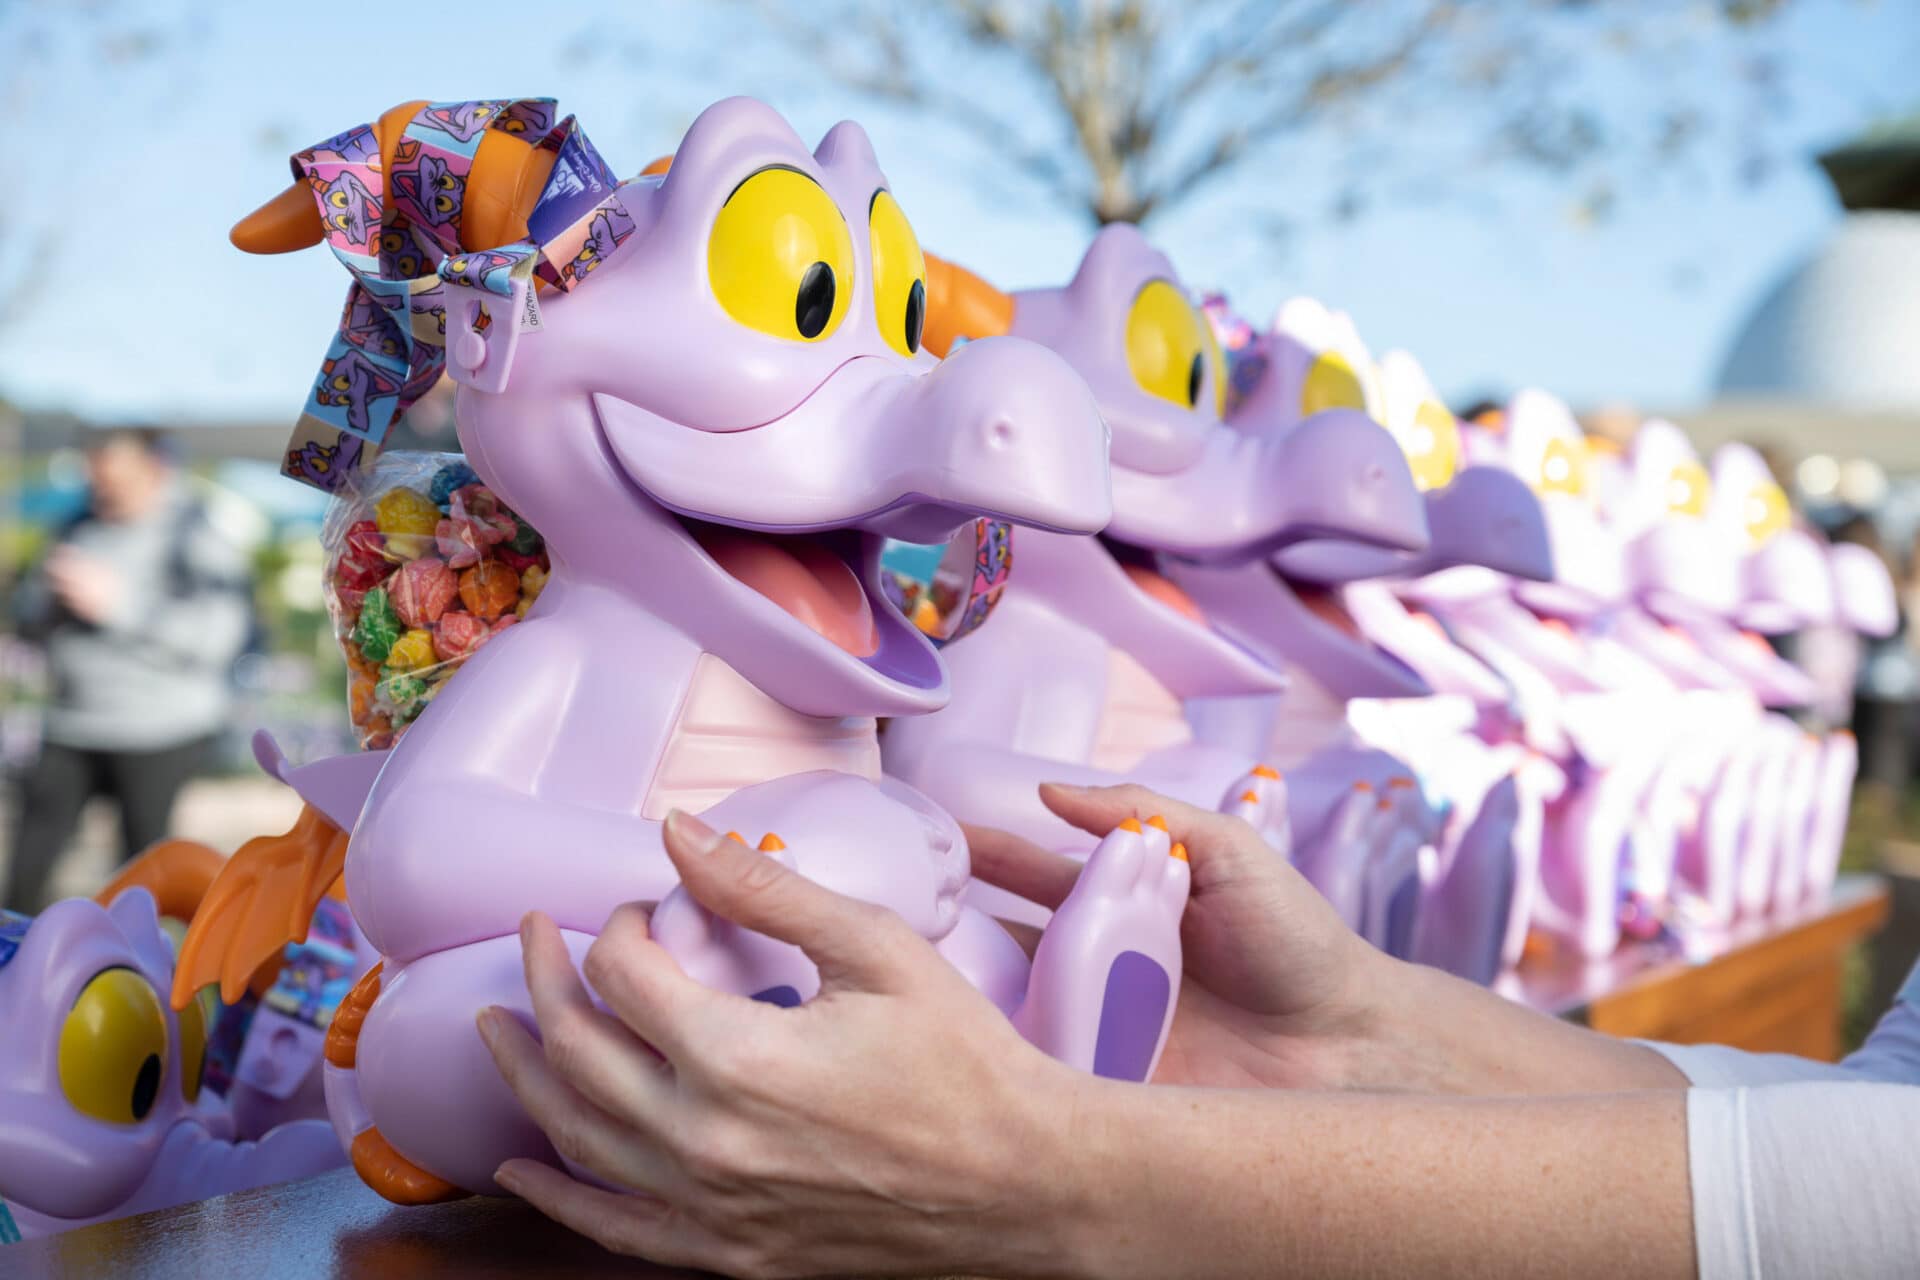 a line of popcorn buckets shaped like a purple dragon